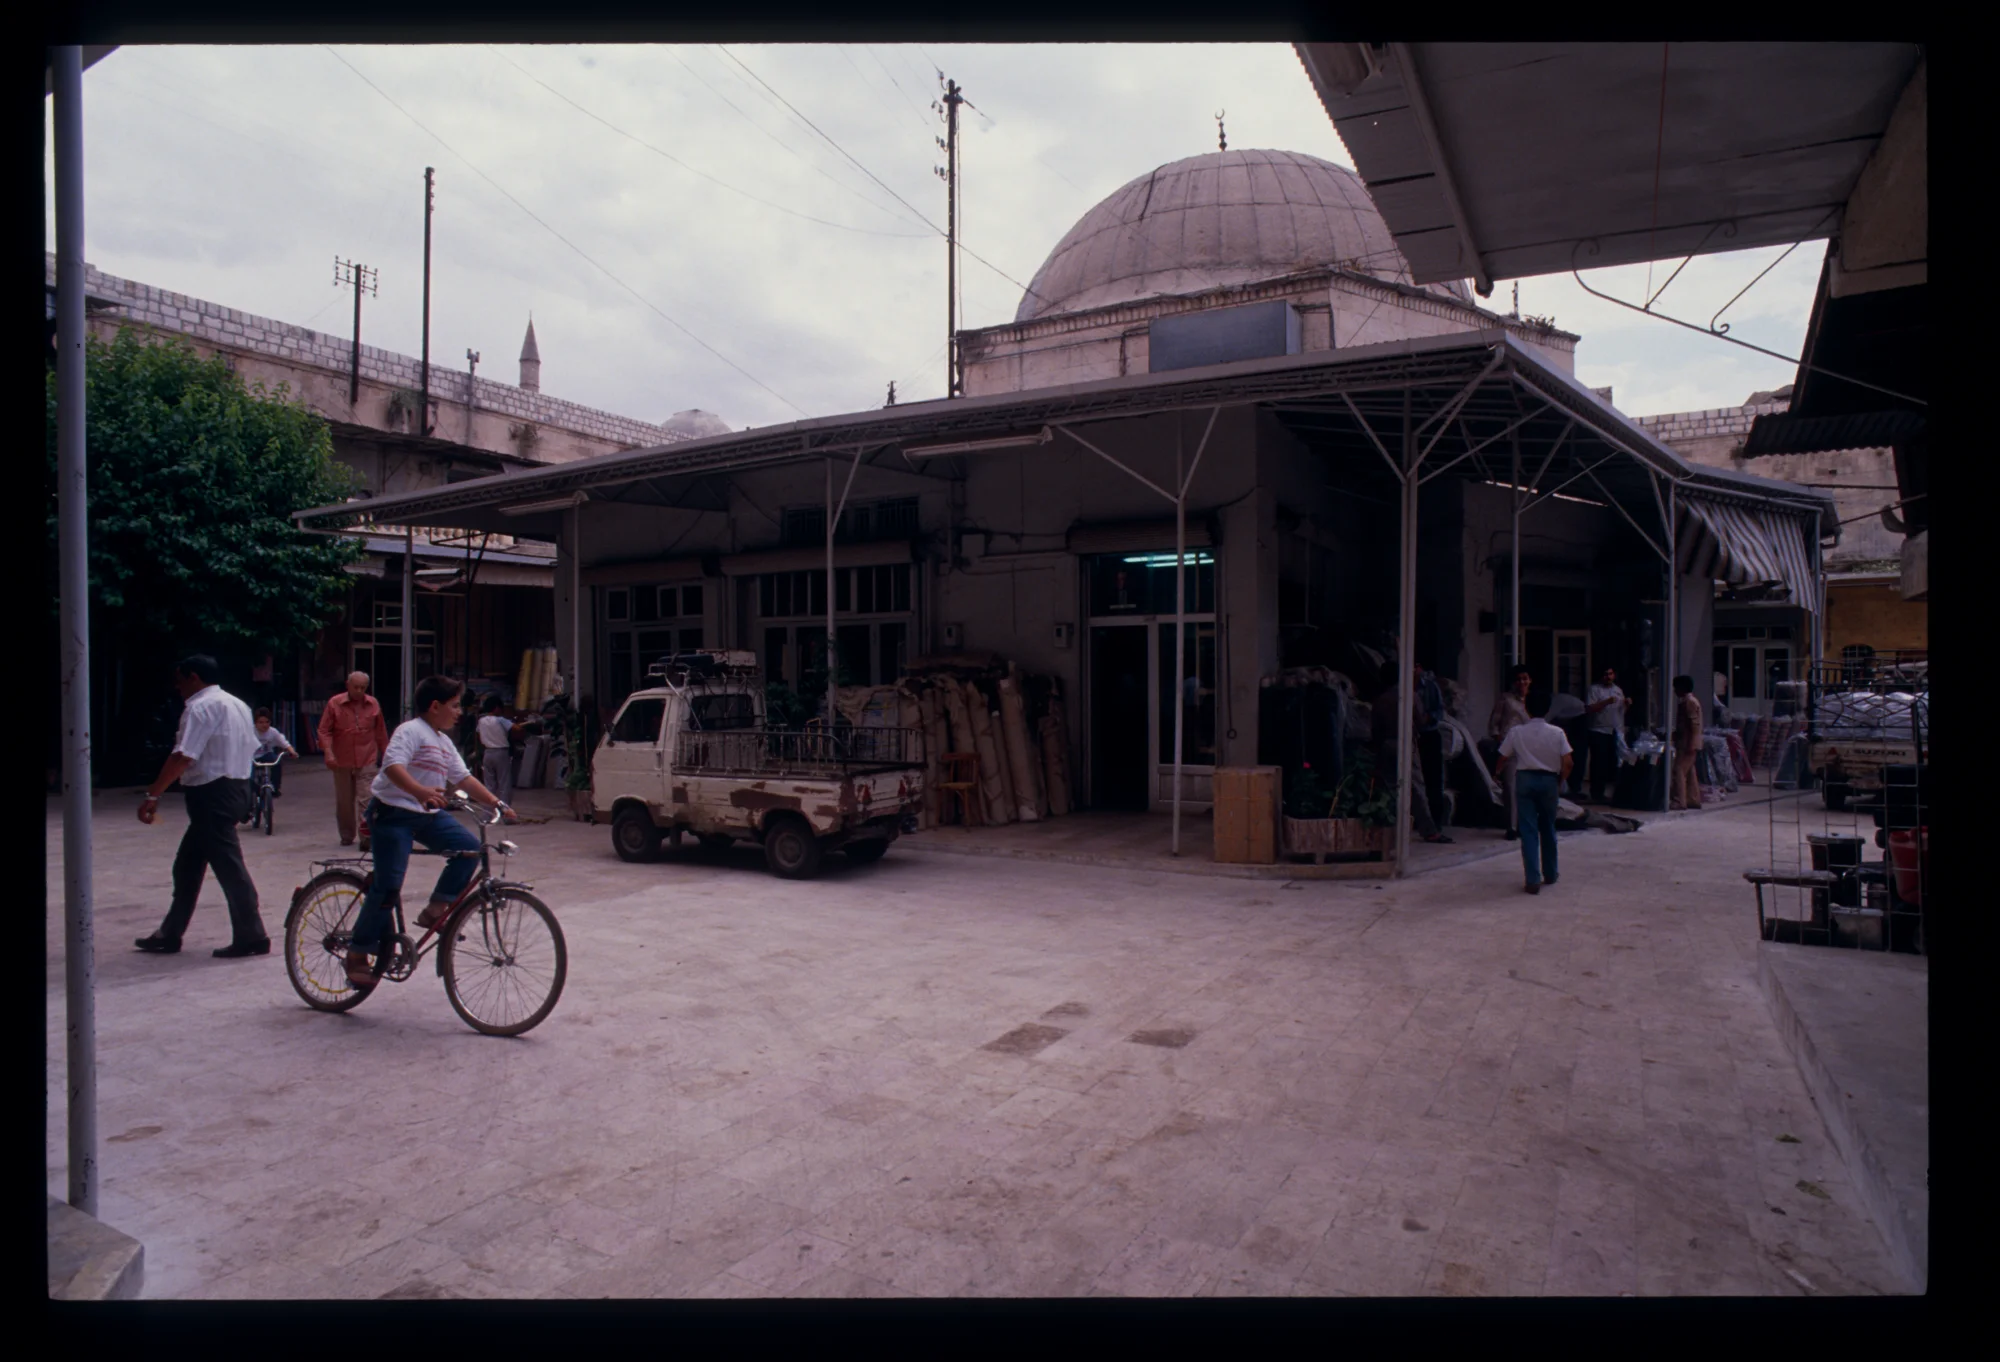 خان الجمرك، مشهد عام للخان يظهر المسجد الذي يتوسط ساحة الخان